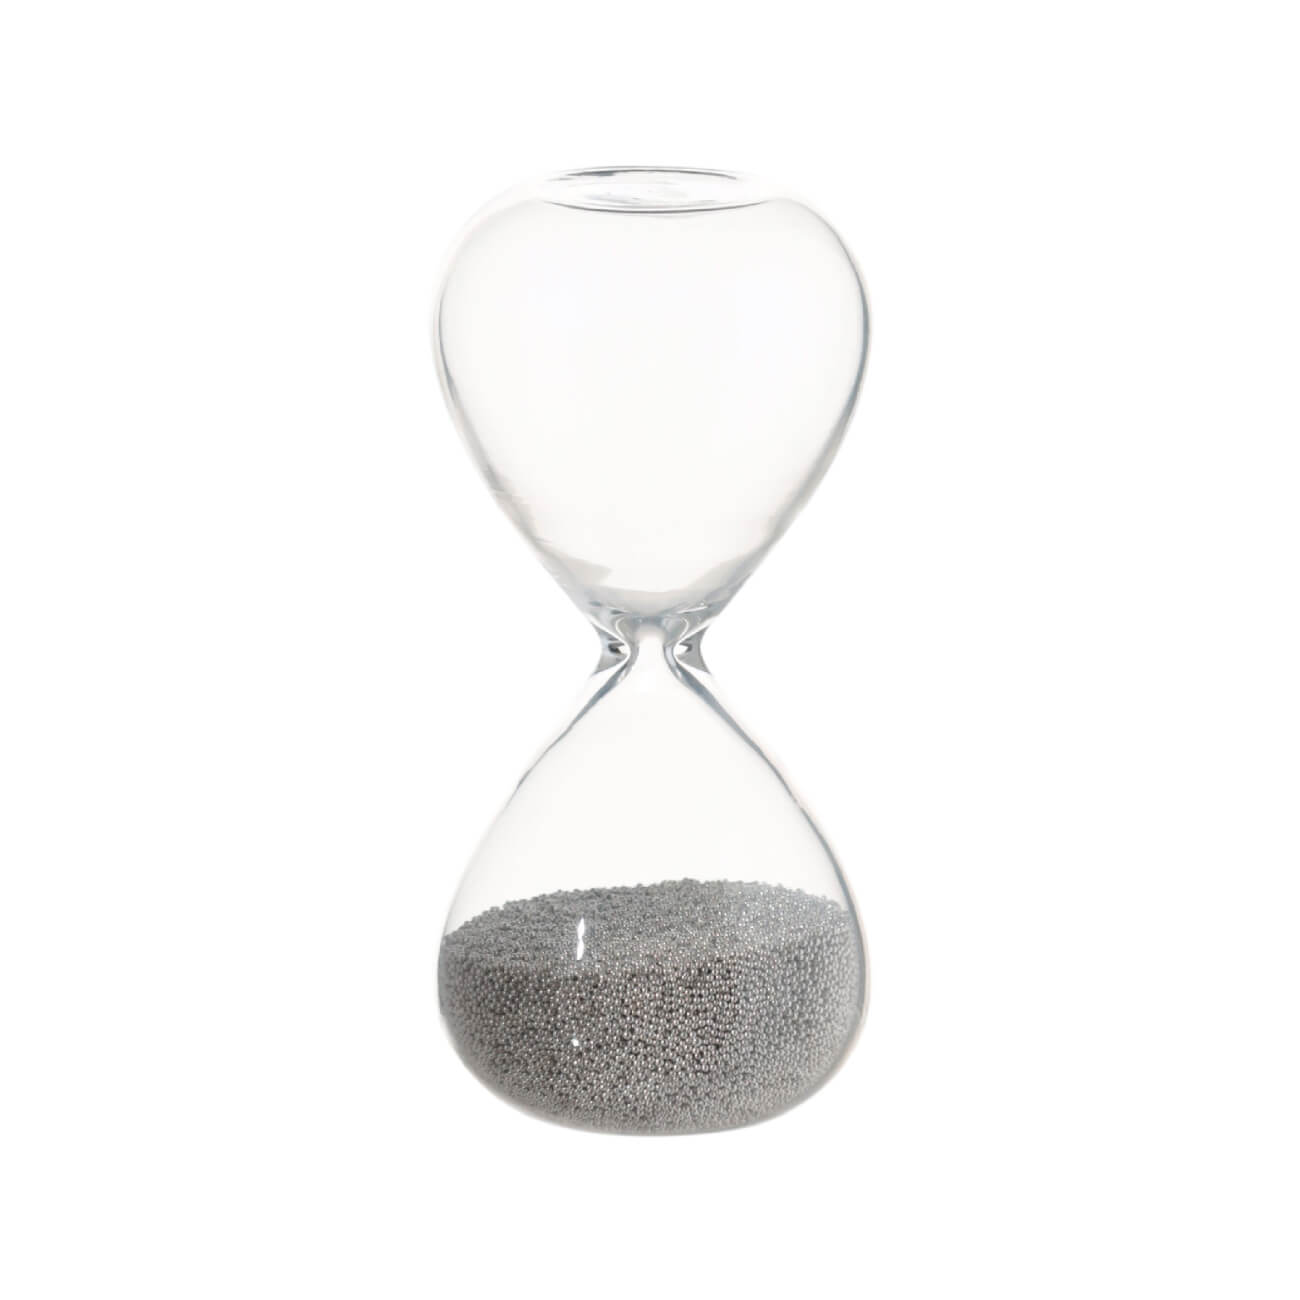 Часы песочные, 8 см, 30 секунд, стекло/песок, Sand time